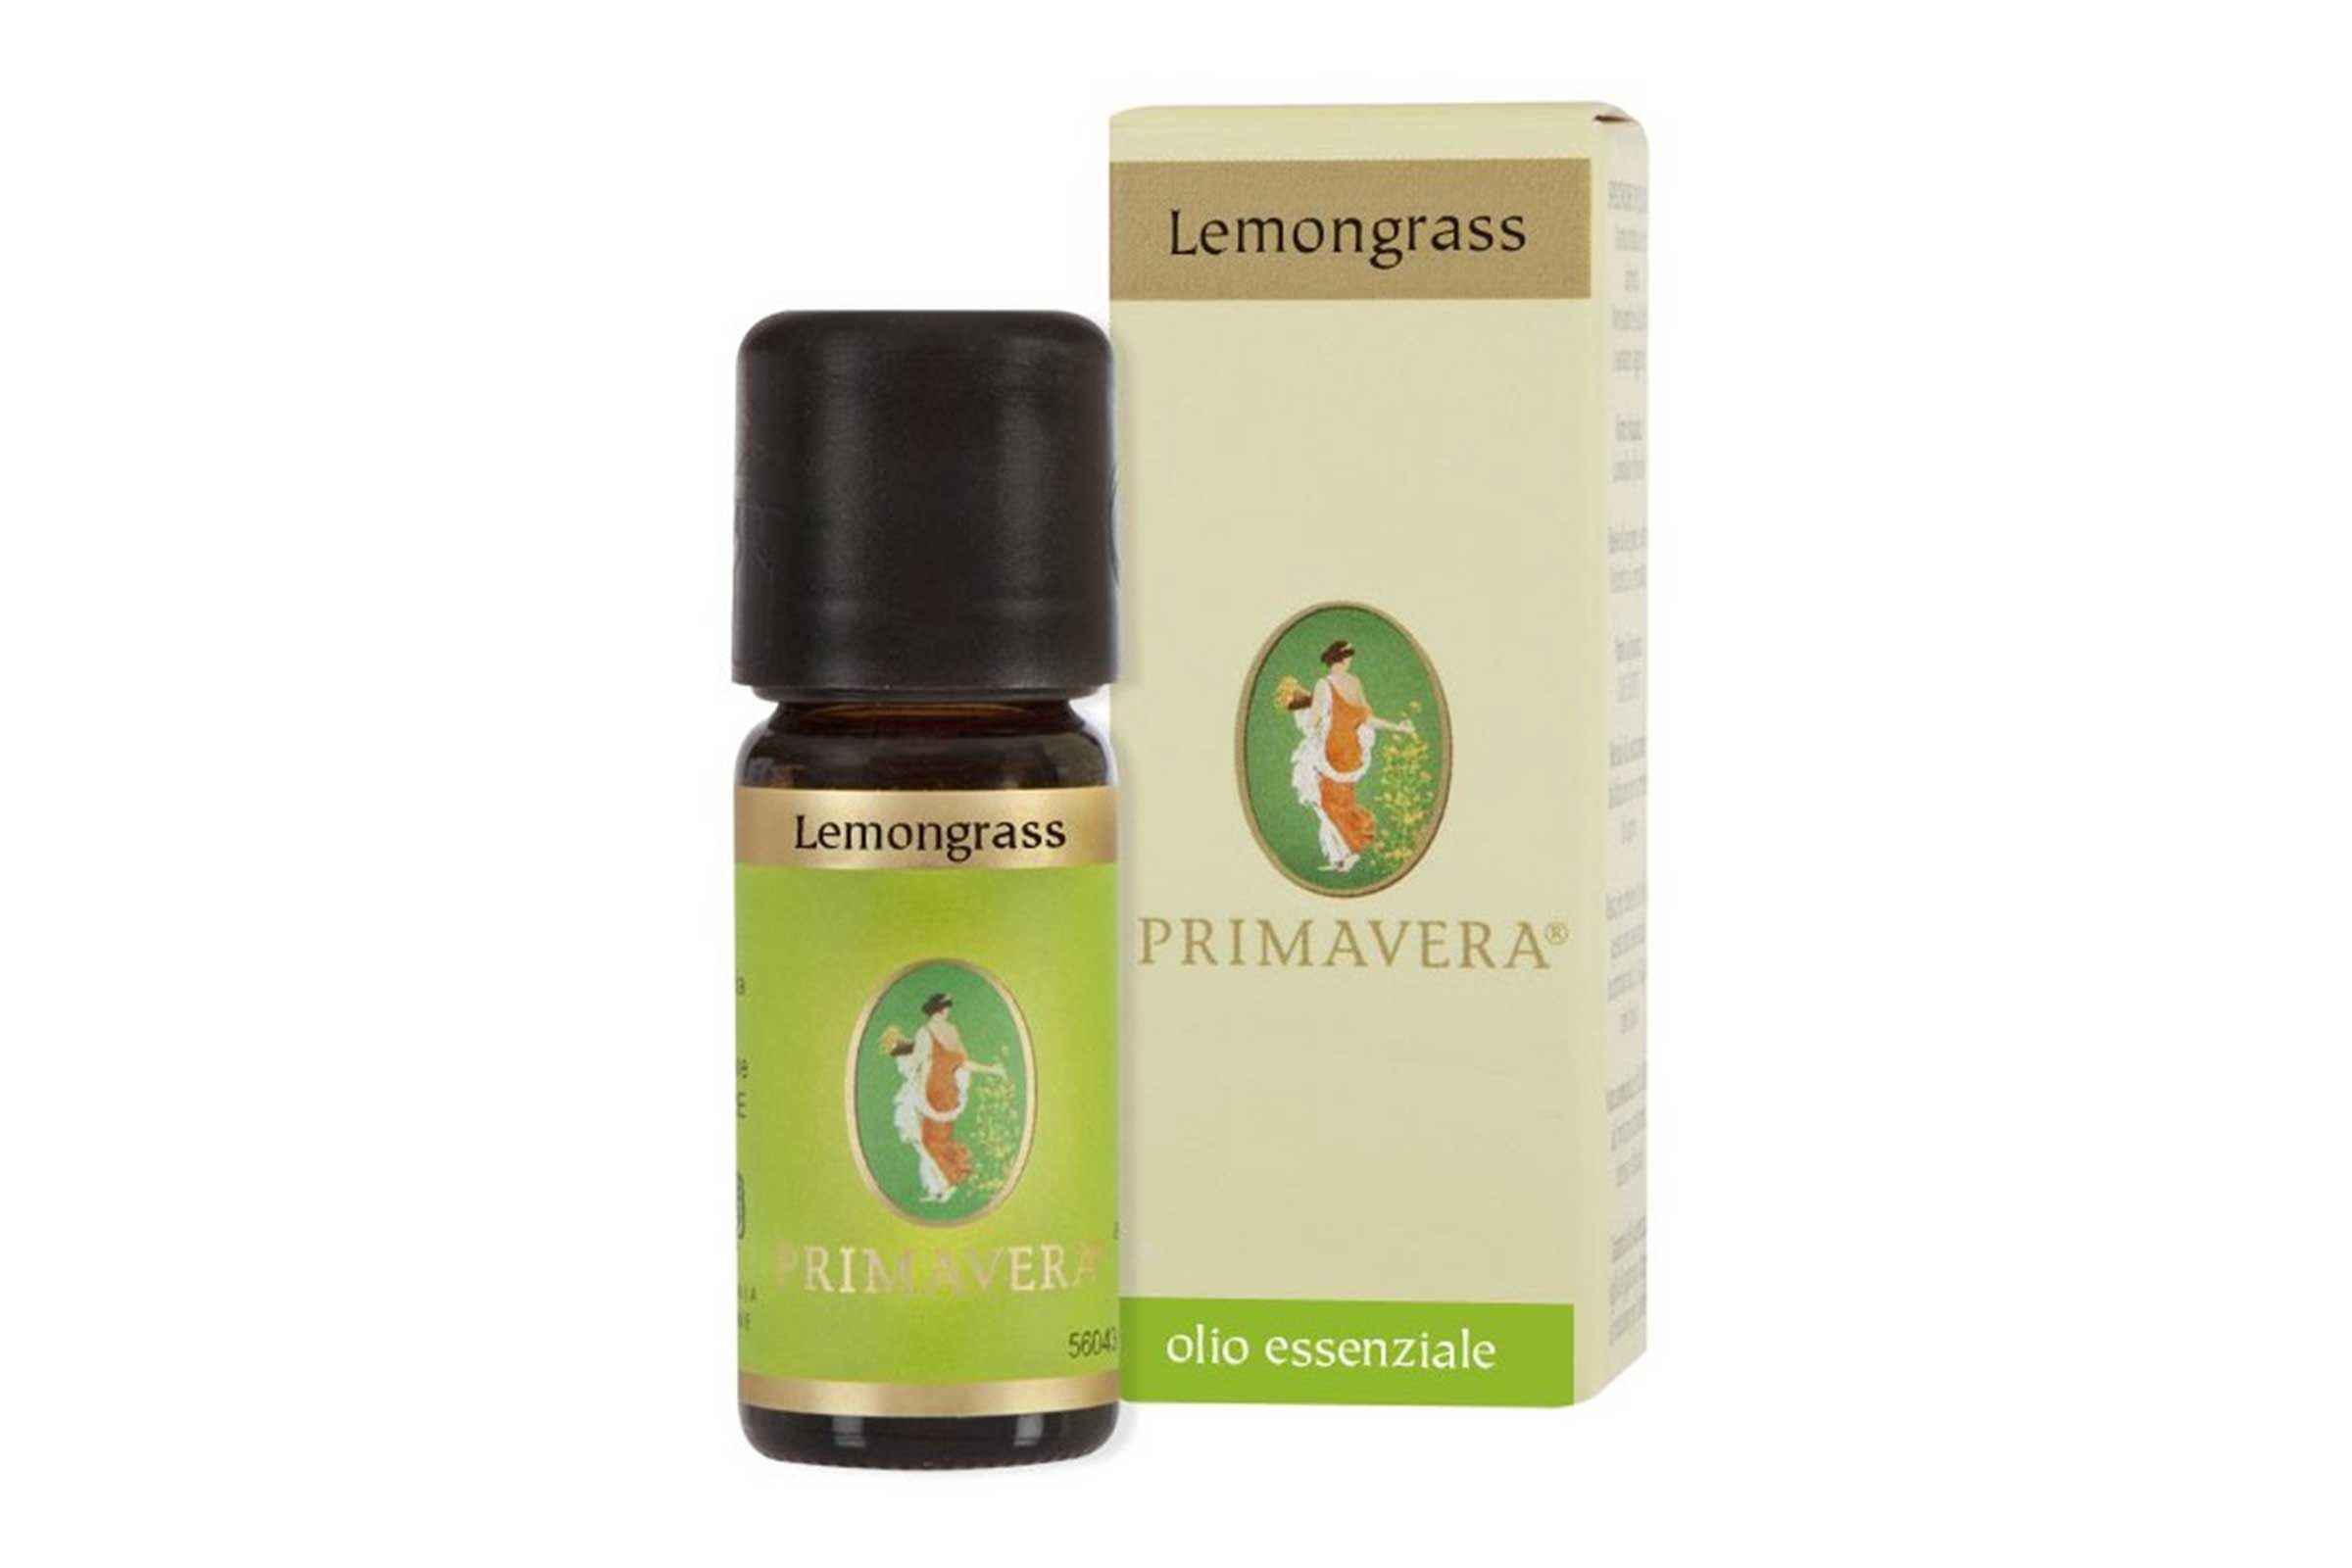 Olio essenziale di lemongrass